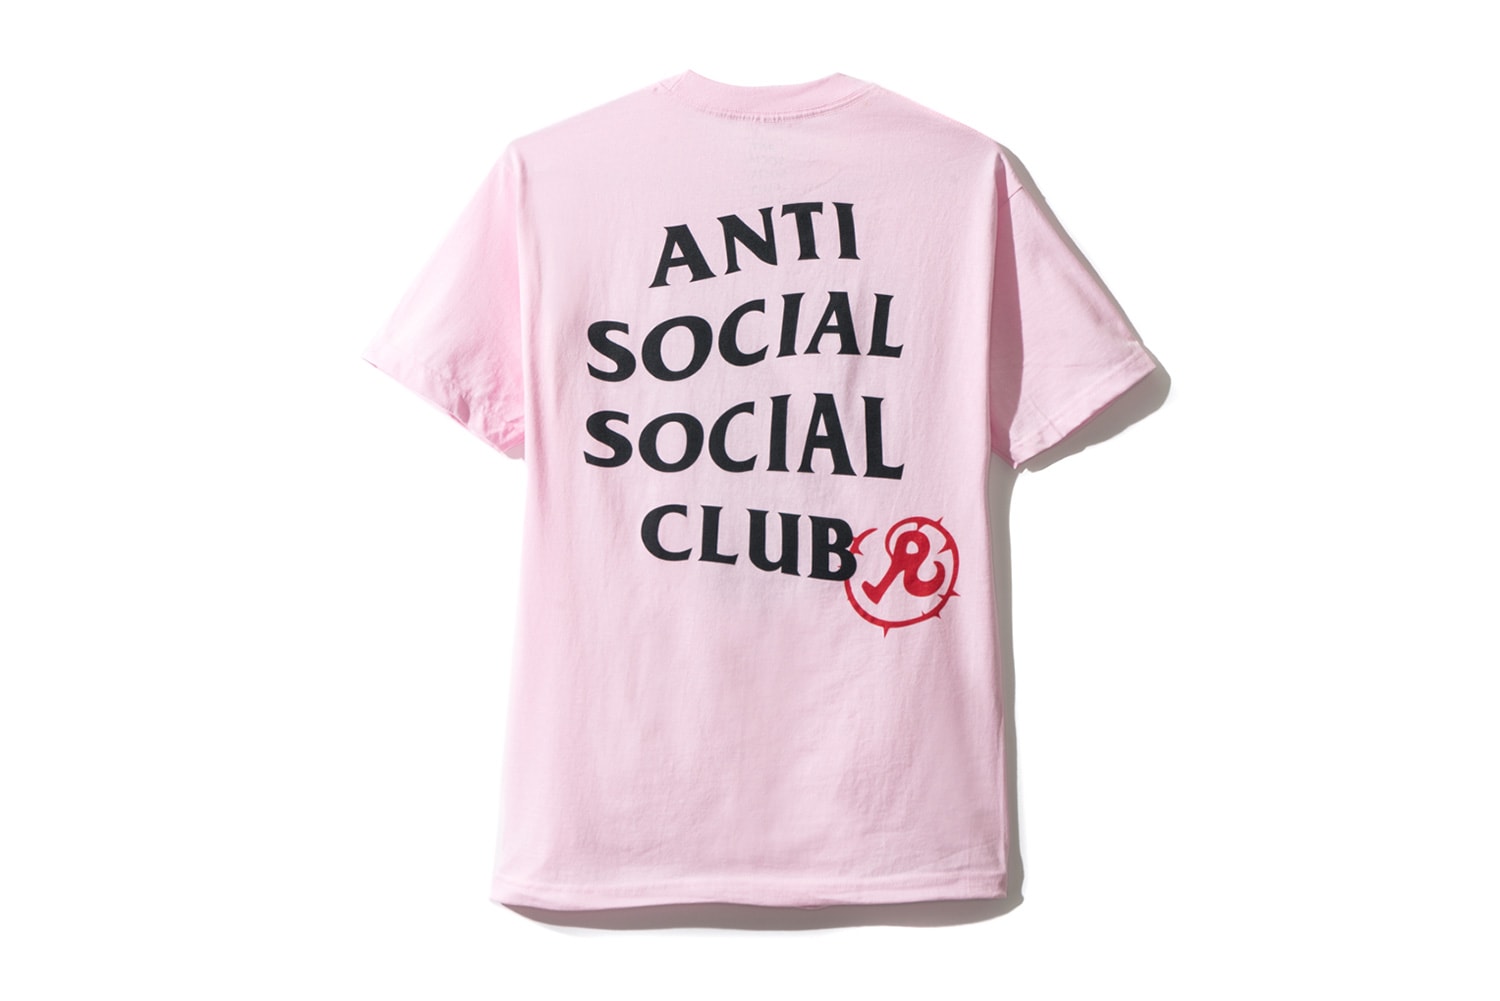 Anti Social Social Club x Richardson コラボピースのビジュアルが遂に解禁  アンチ・ソーシャル・ソーシャル・クラブ リチャードソン